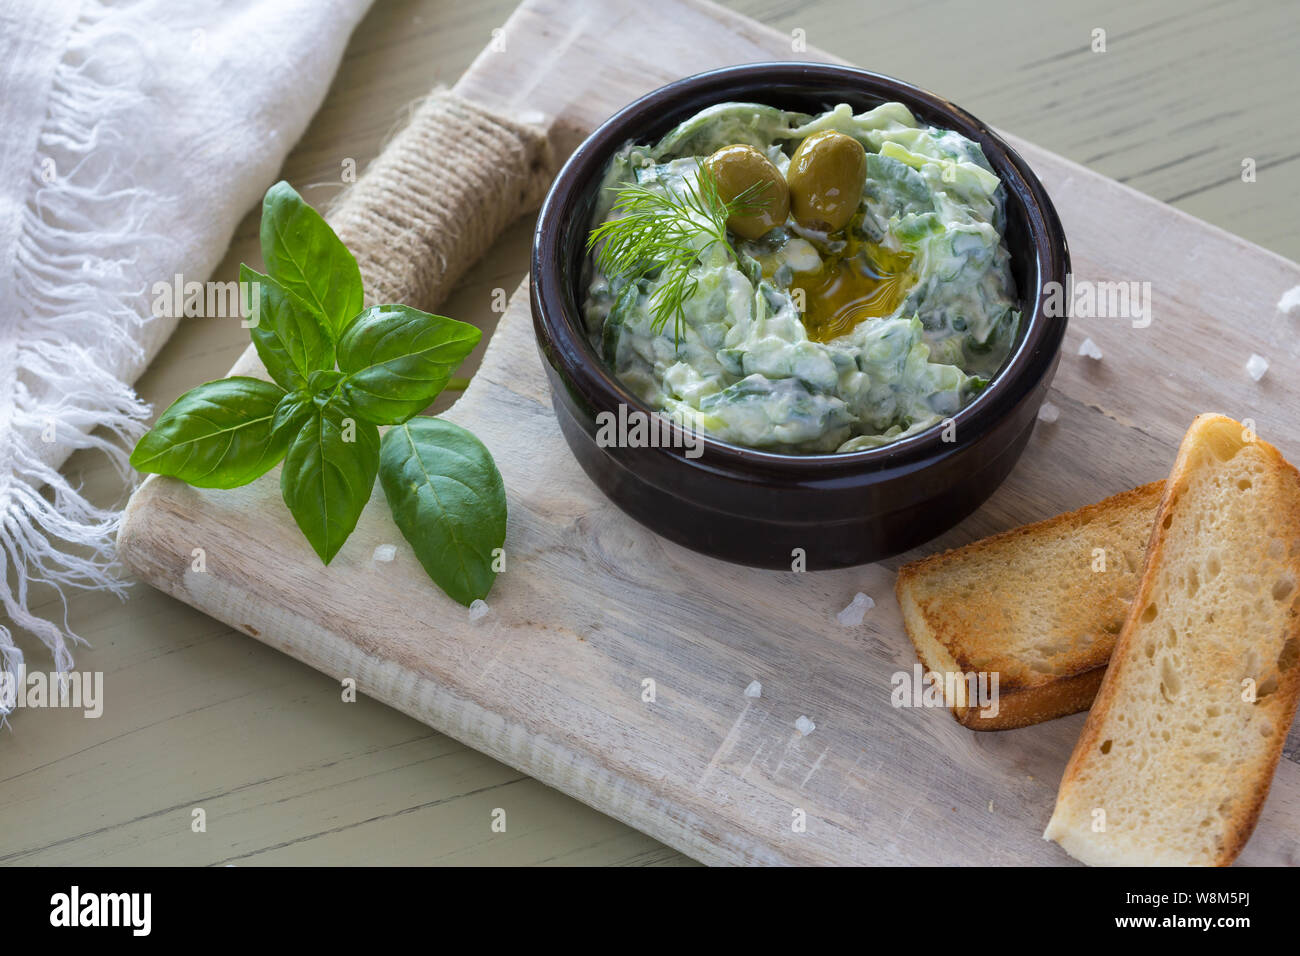 Trempette grecque tzatziki sauce ou vinaigrette ingrédients et décoré avec de l'huile d'olive et basilic sur table en bois Banque D'Images